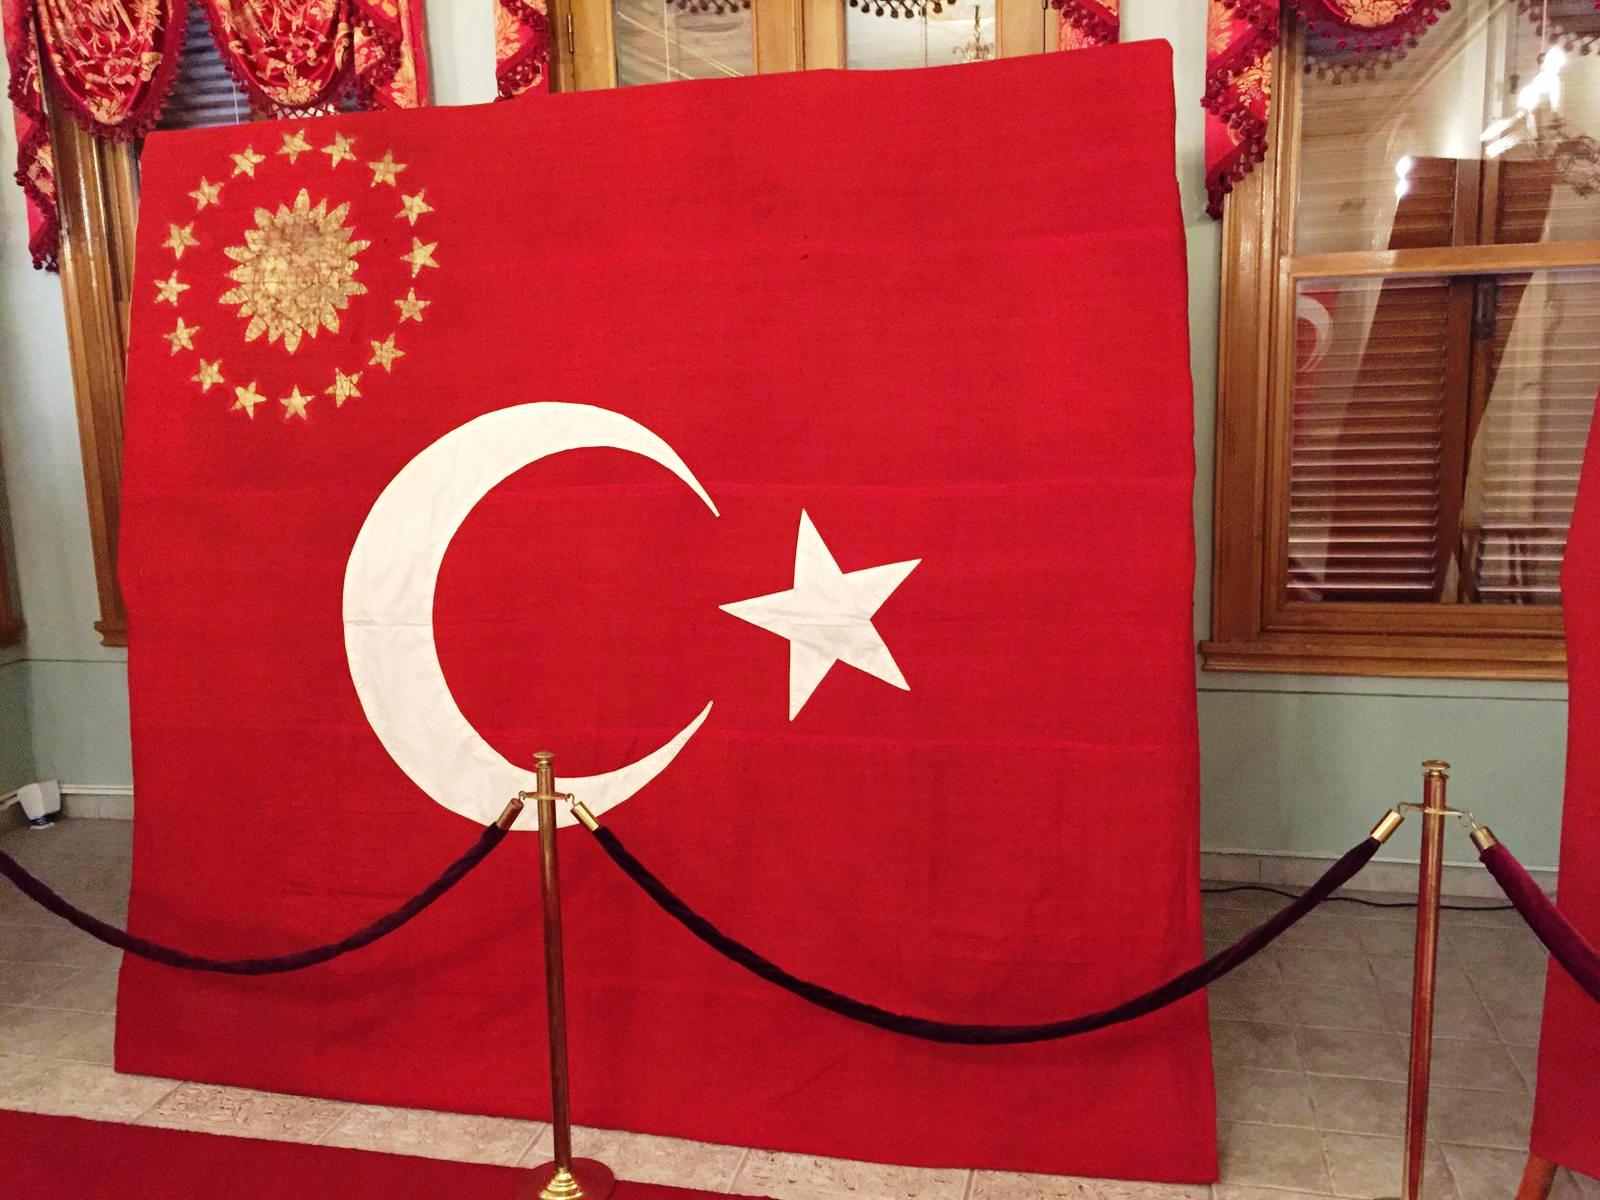 Çağdaş, uygar “devlet” olmanın bugün taşıdığı kimliğin içi oldukça zengin hale gelmiştir. “Devlet olamayanlar”, kabile, cemaat, özel statülü (!) gibi demokrasi dışı “özel devlet” durumunda bulunmuş ise çok sayıdaki olmazsa olmazdan yoksundurlar. - cumhuriyetin ilk bayraklarinda 20 turk devleti